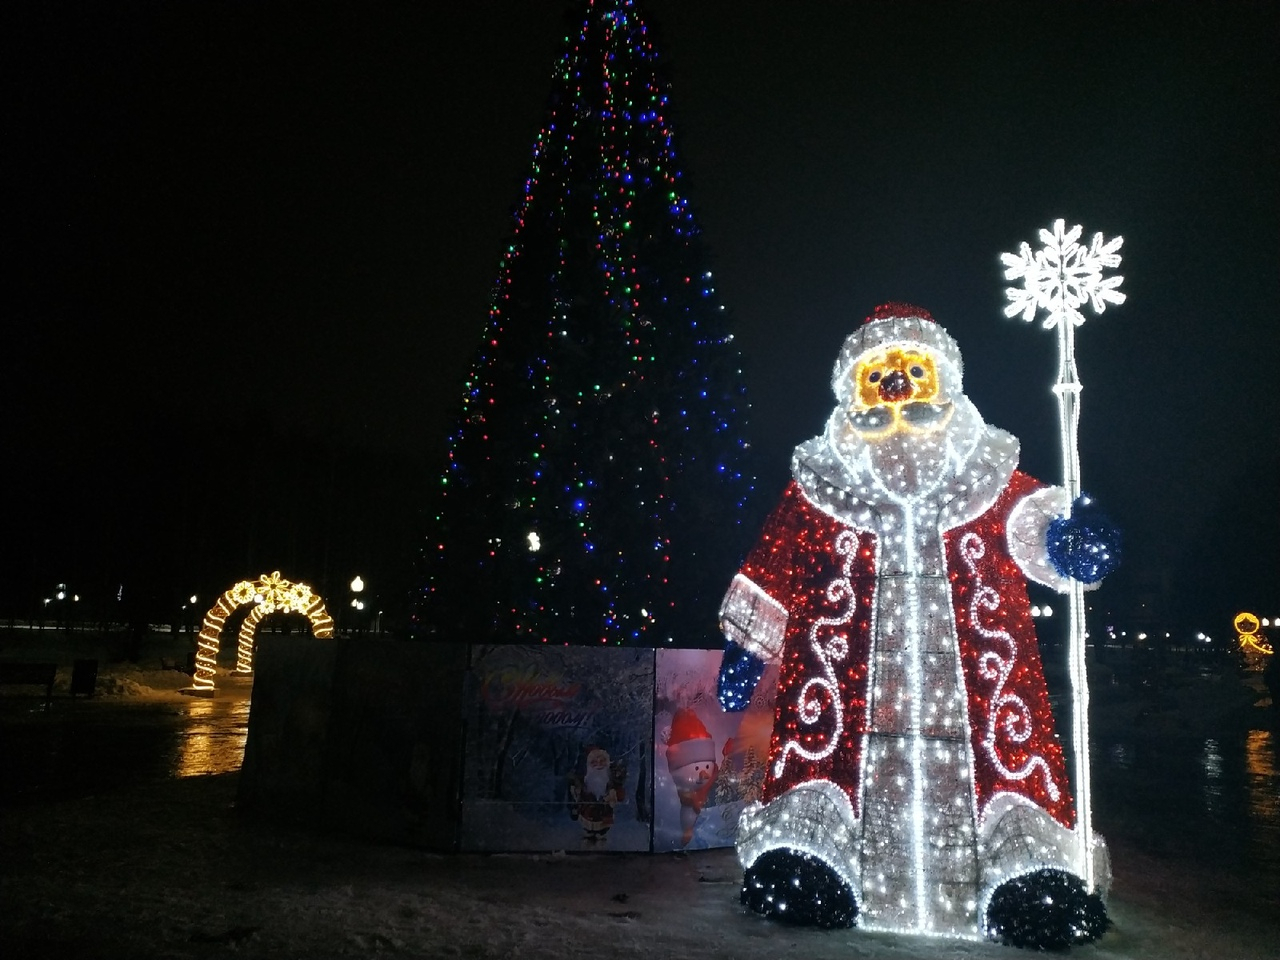 Снеговик, Дед Мороз и Матрешка: как Кочуровский парк украсили к Новому году